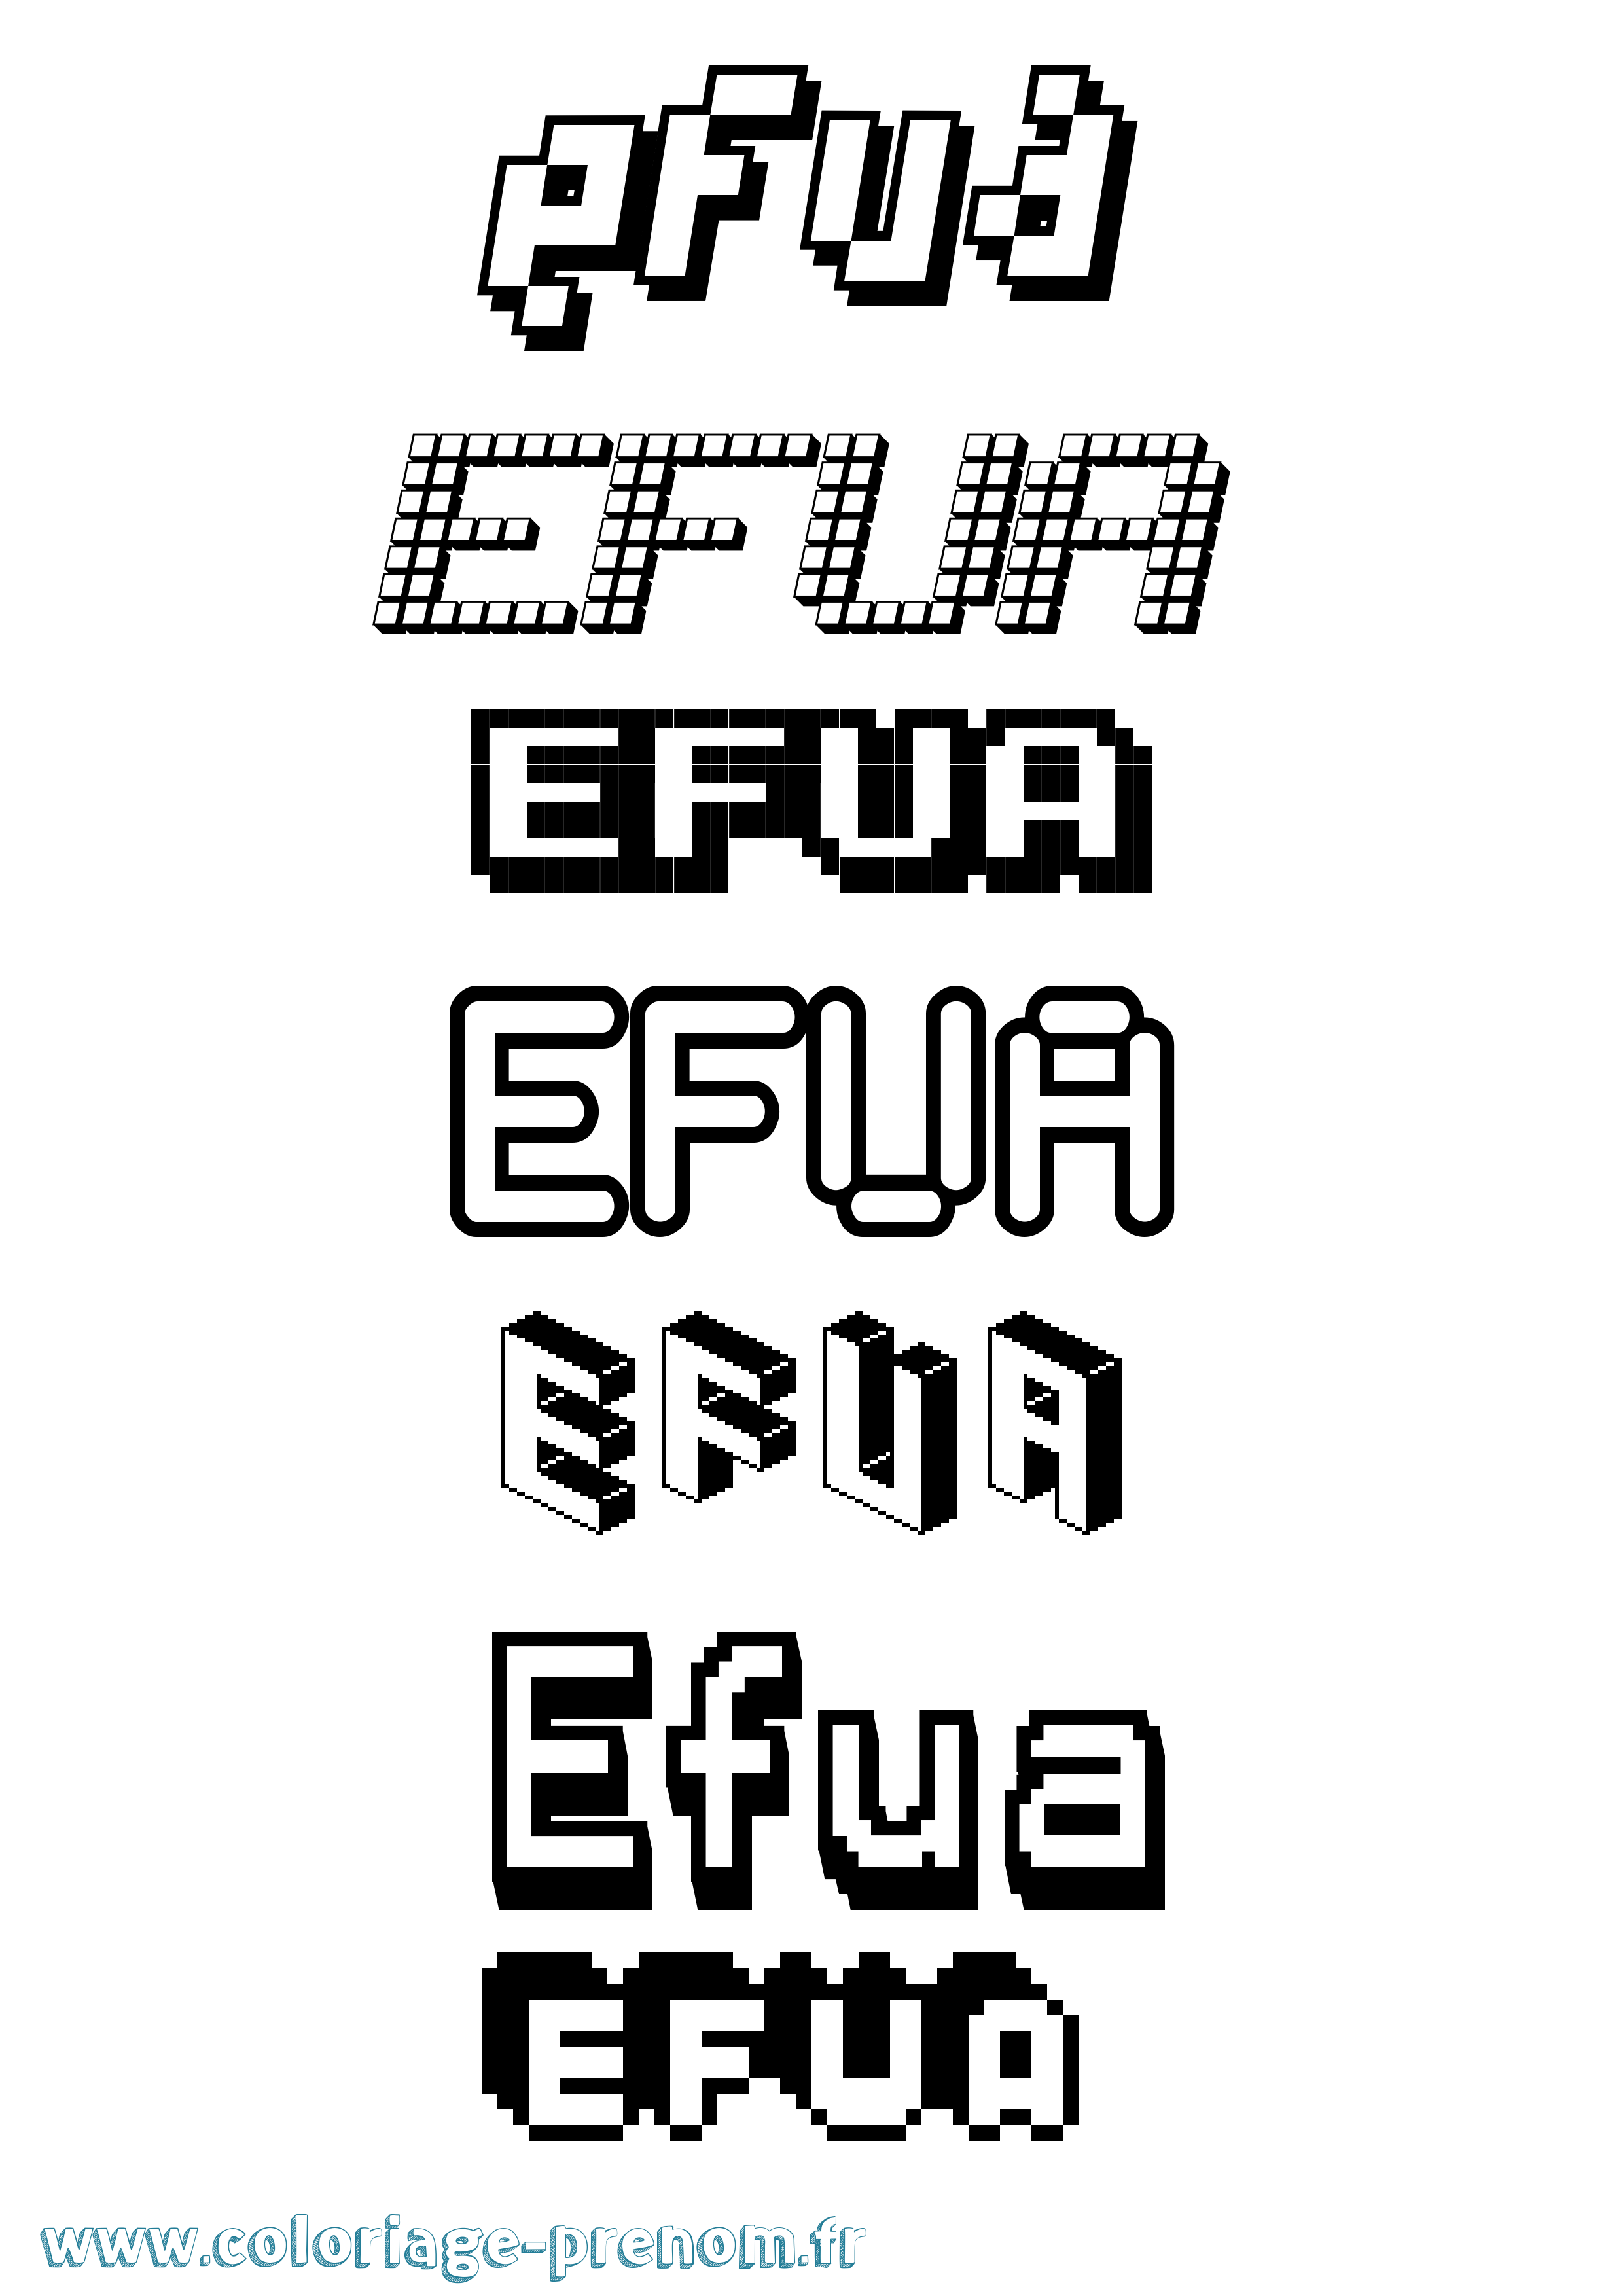 Coloriage prénom Efua Pixel